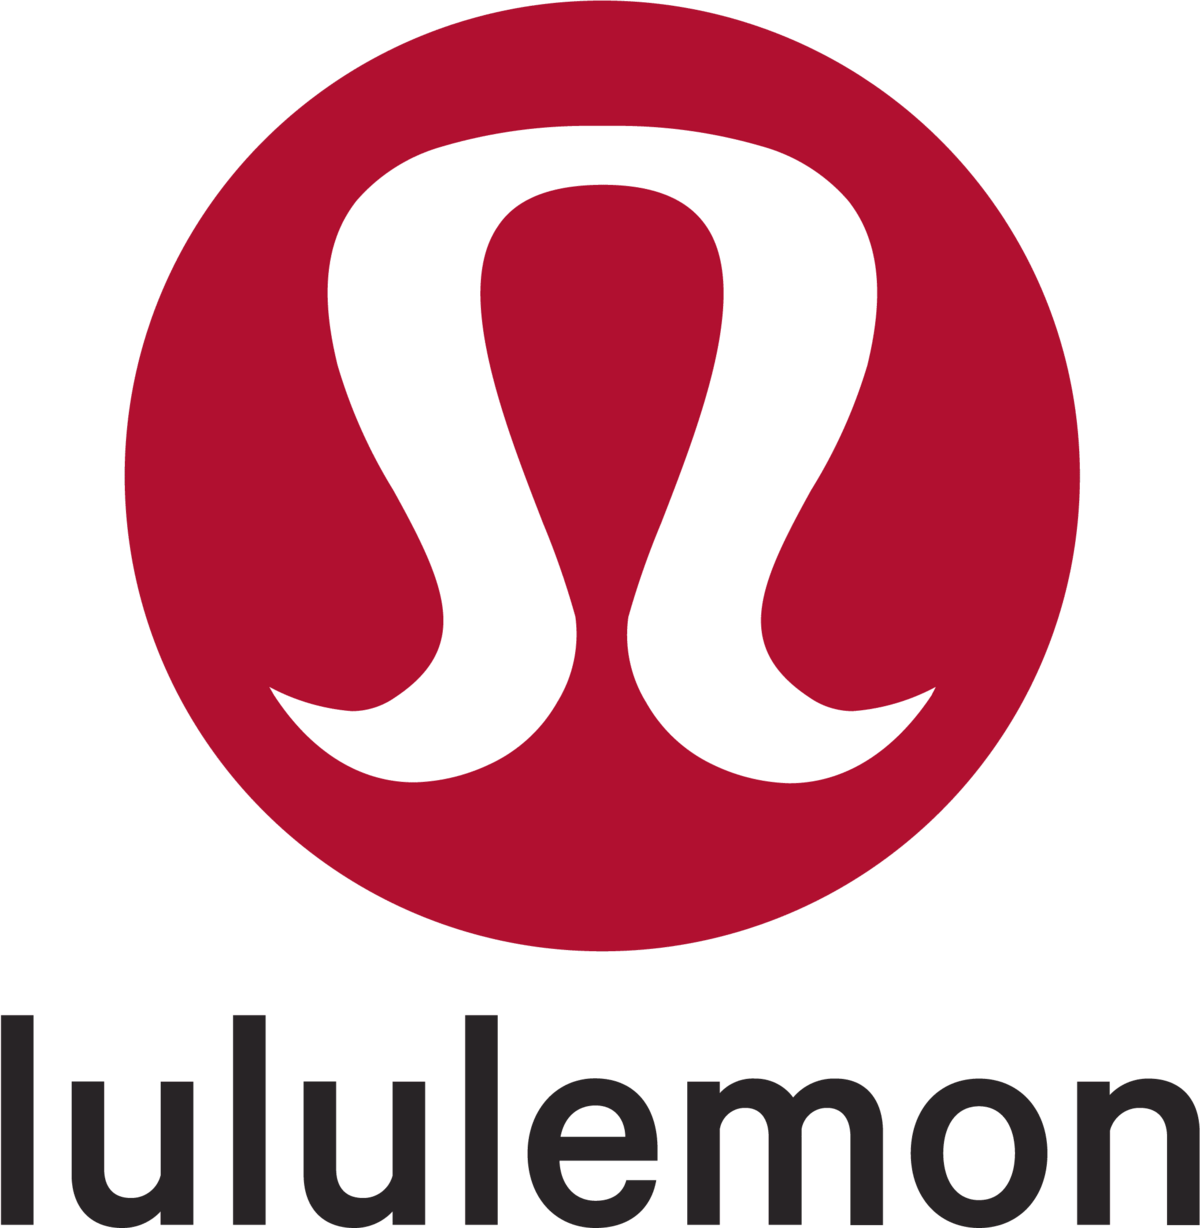 512-5127106_lululemon-emblema-lululemon-logo-black-background